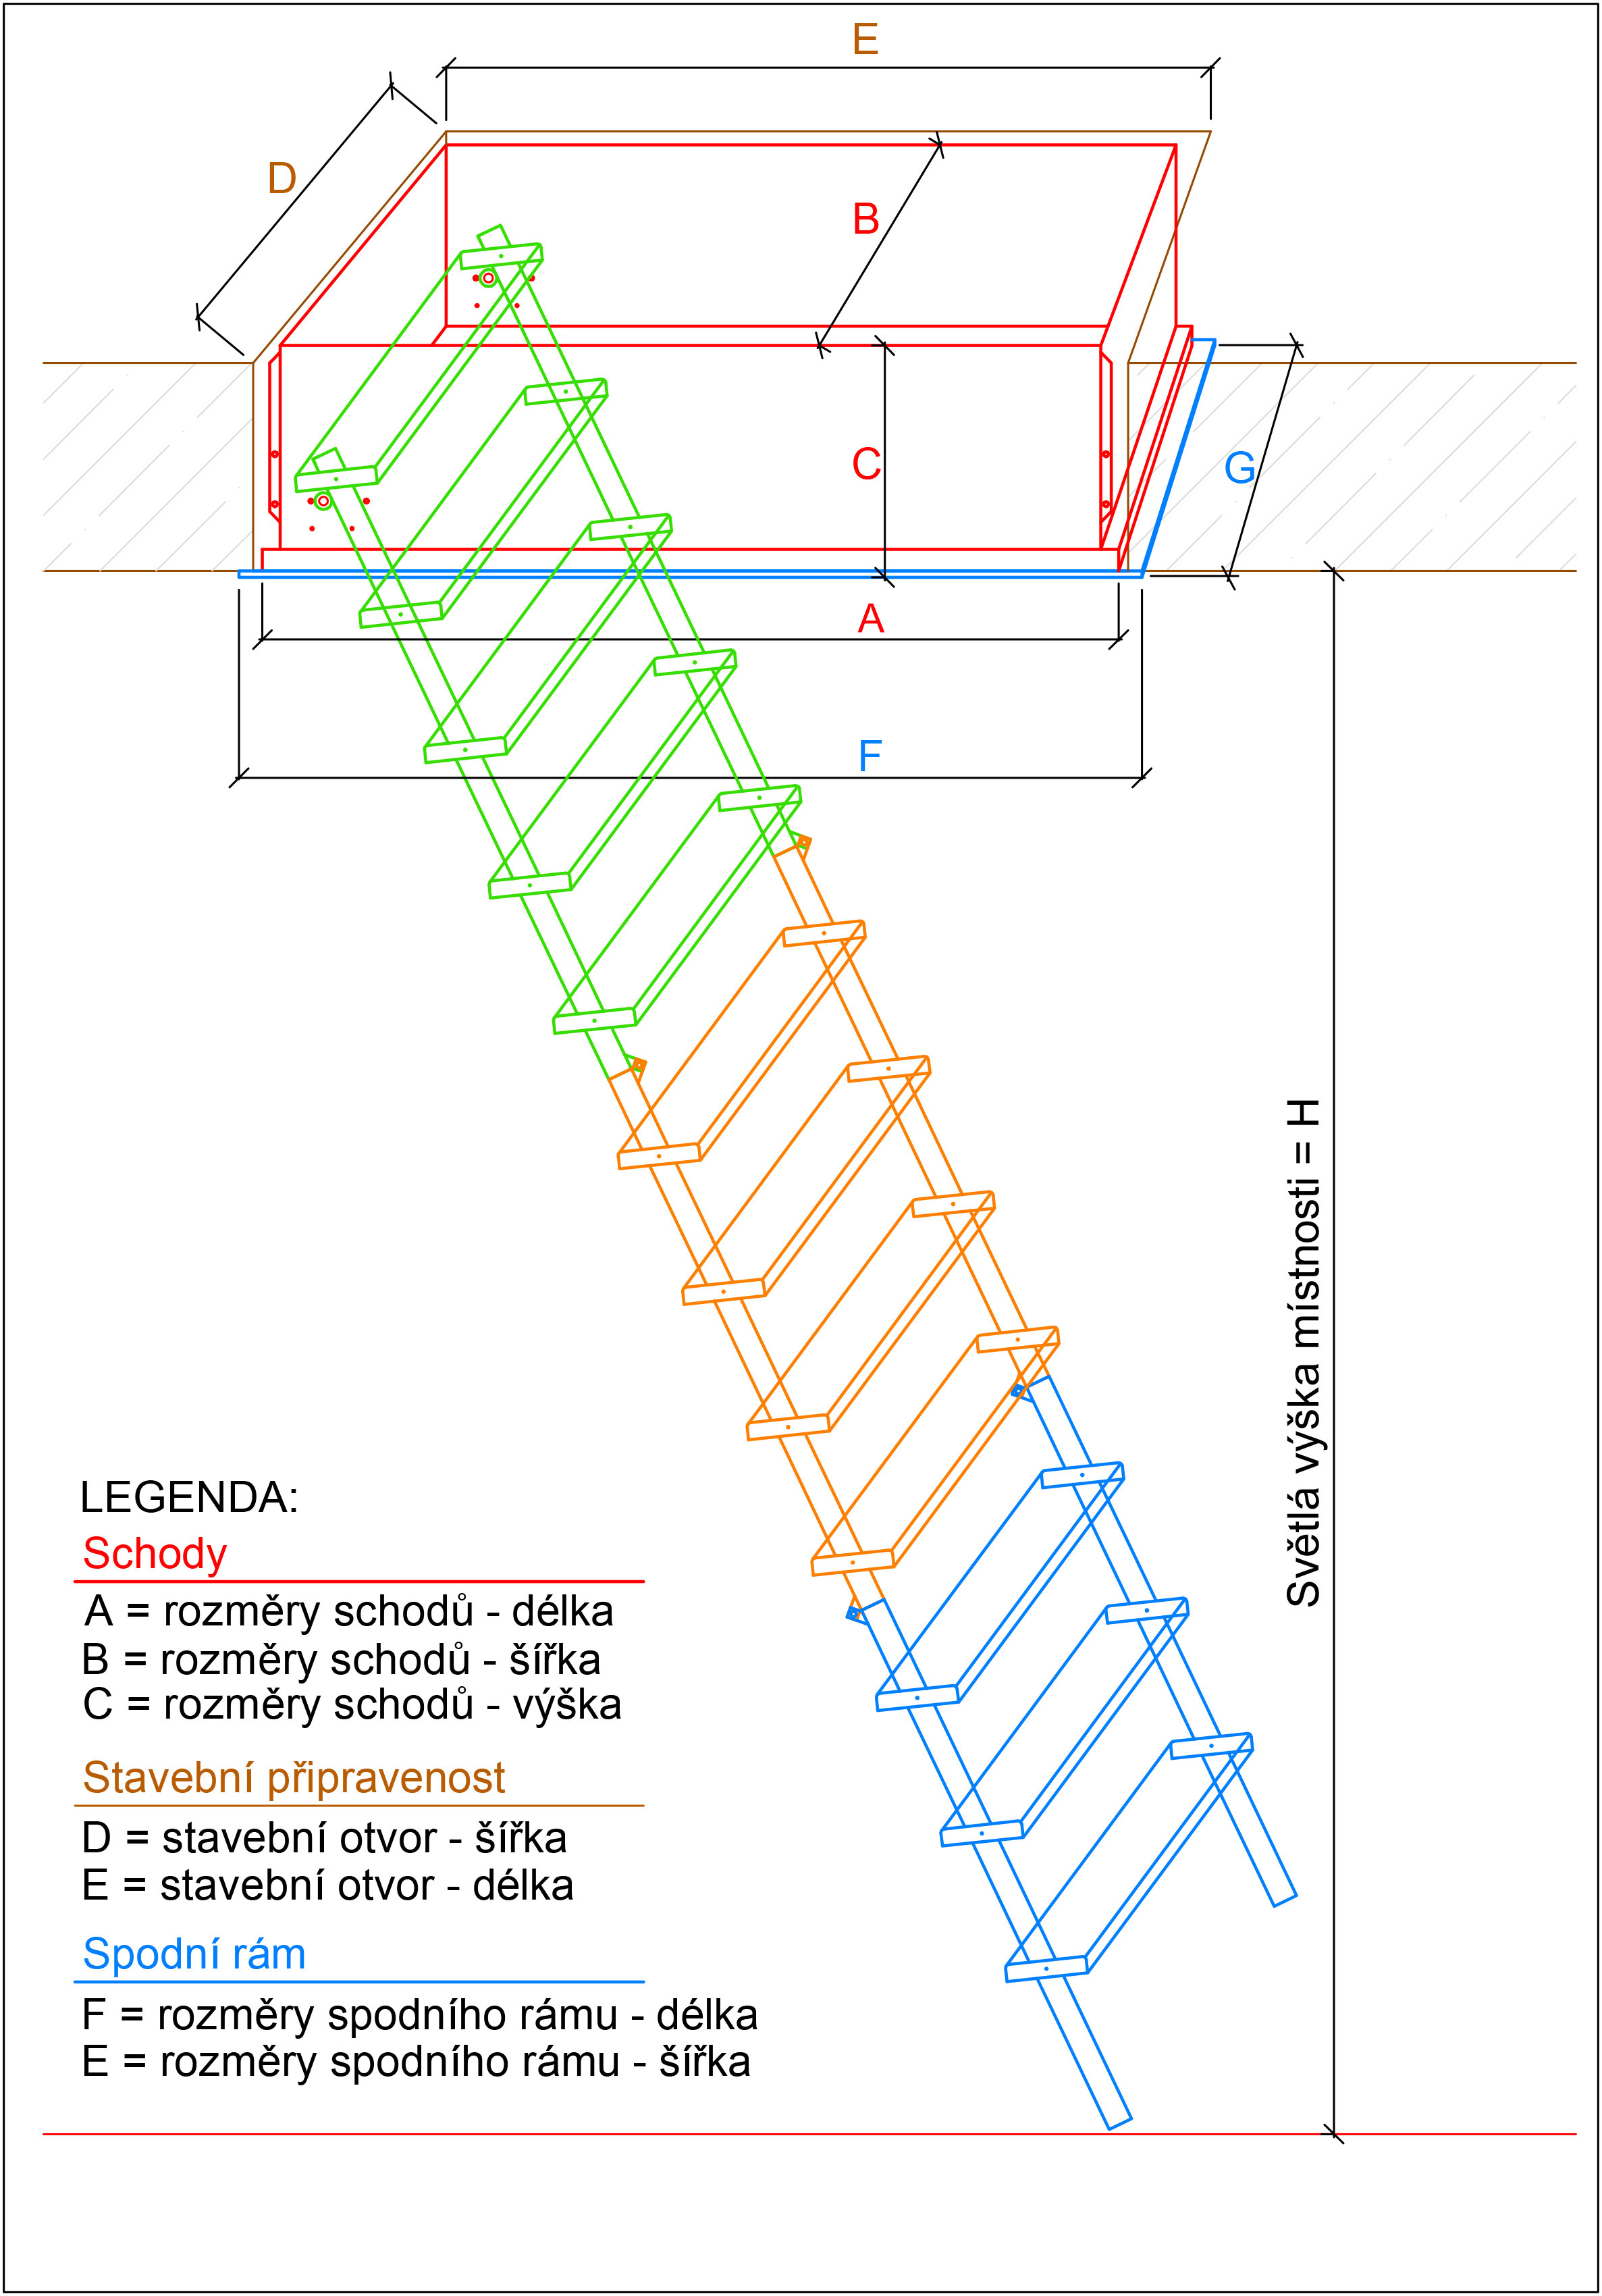 Rozpis rozměrů schodů